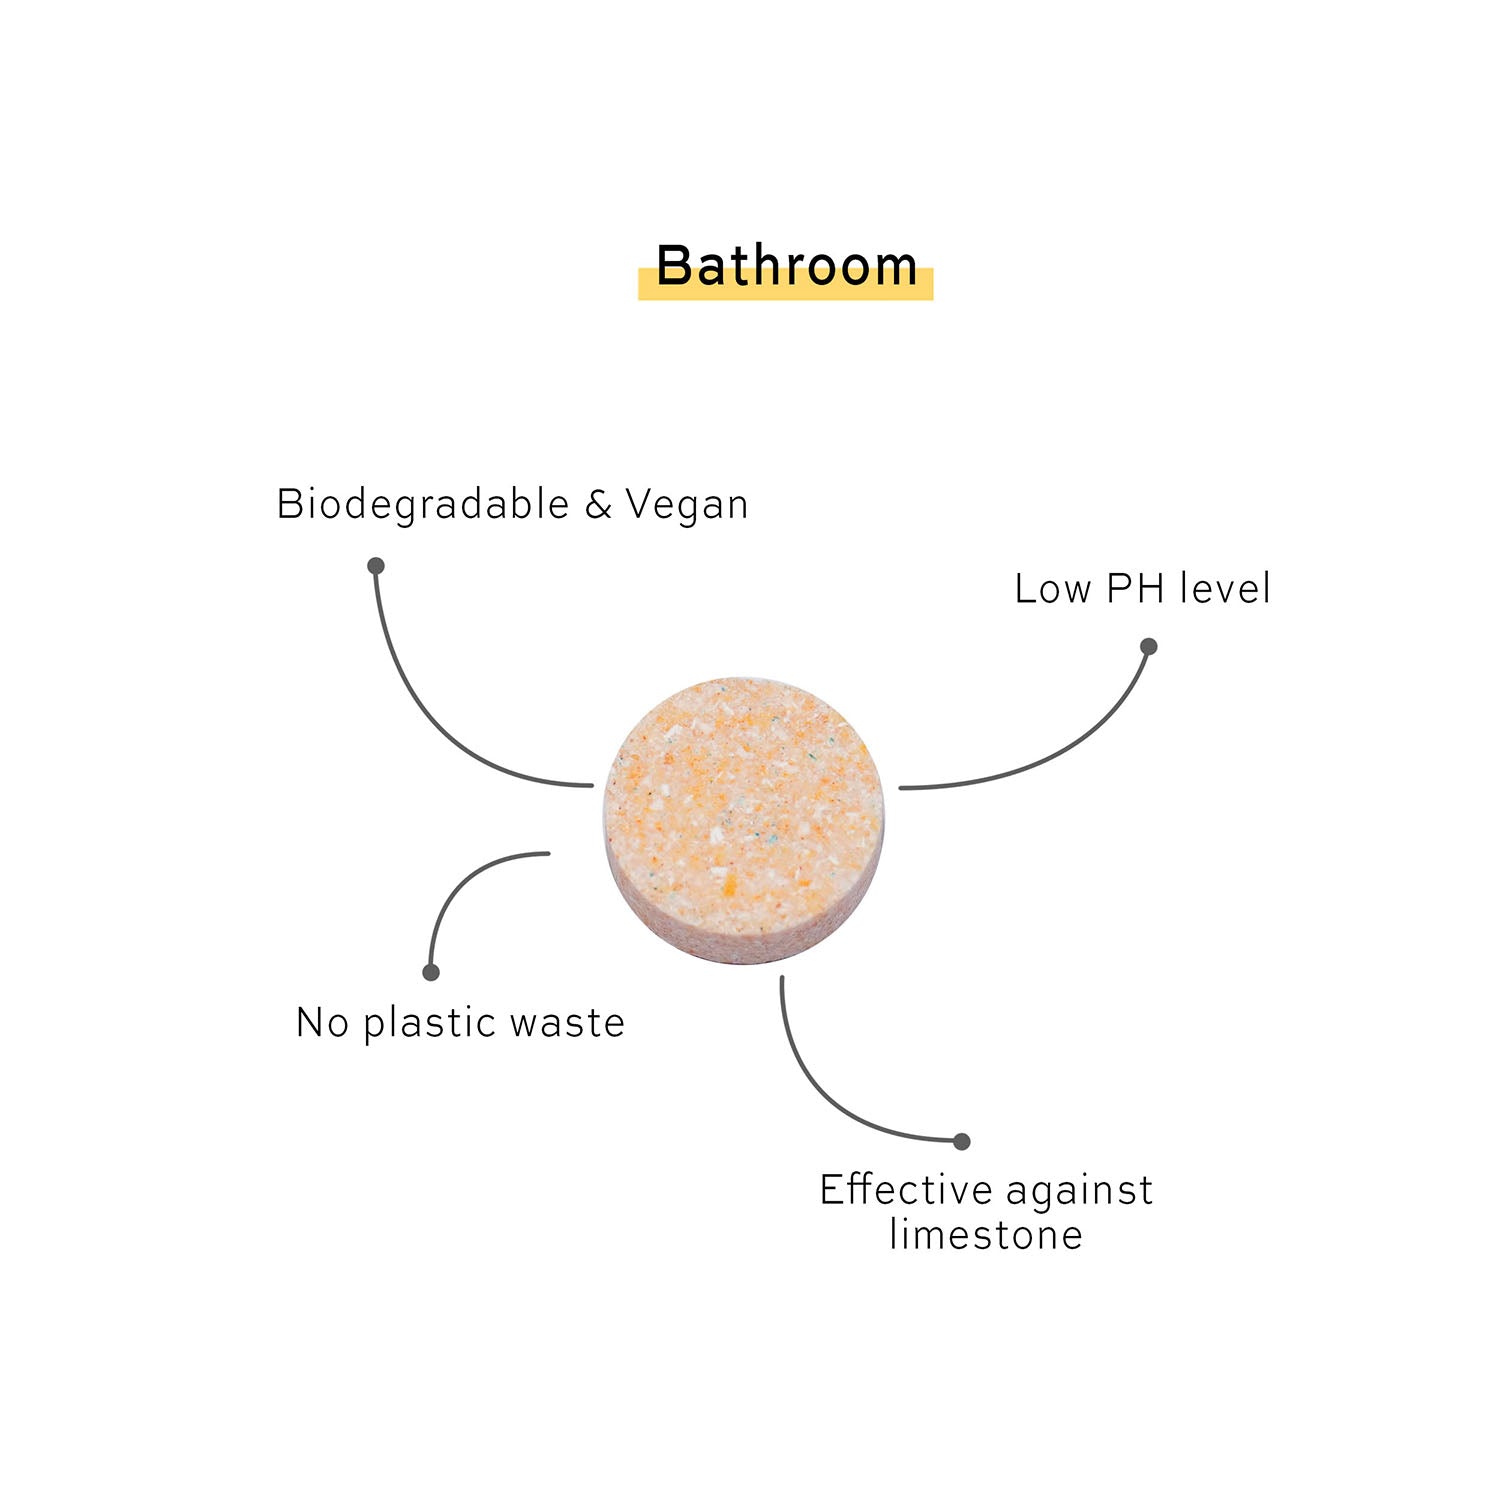 1 Skosh rengöringstablett för badrum - biodynamiskt nedbrytbar och vegansk, lågt PH-värde, inget plastavfall, effektiv mot kalksten